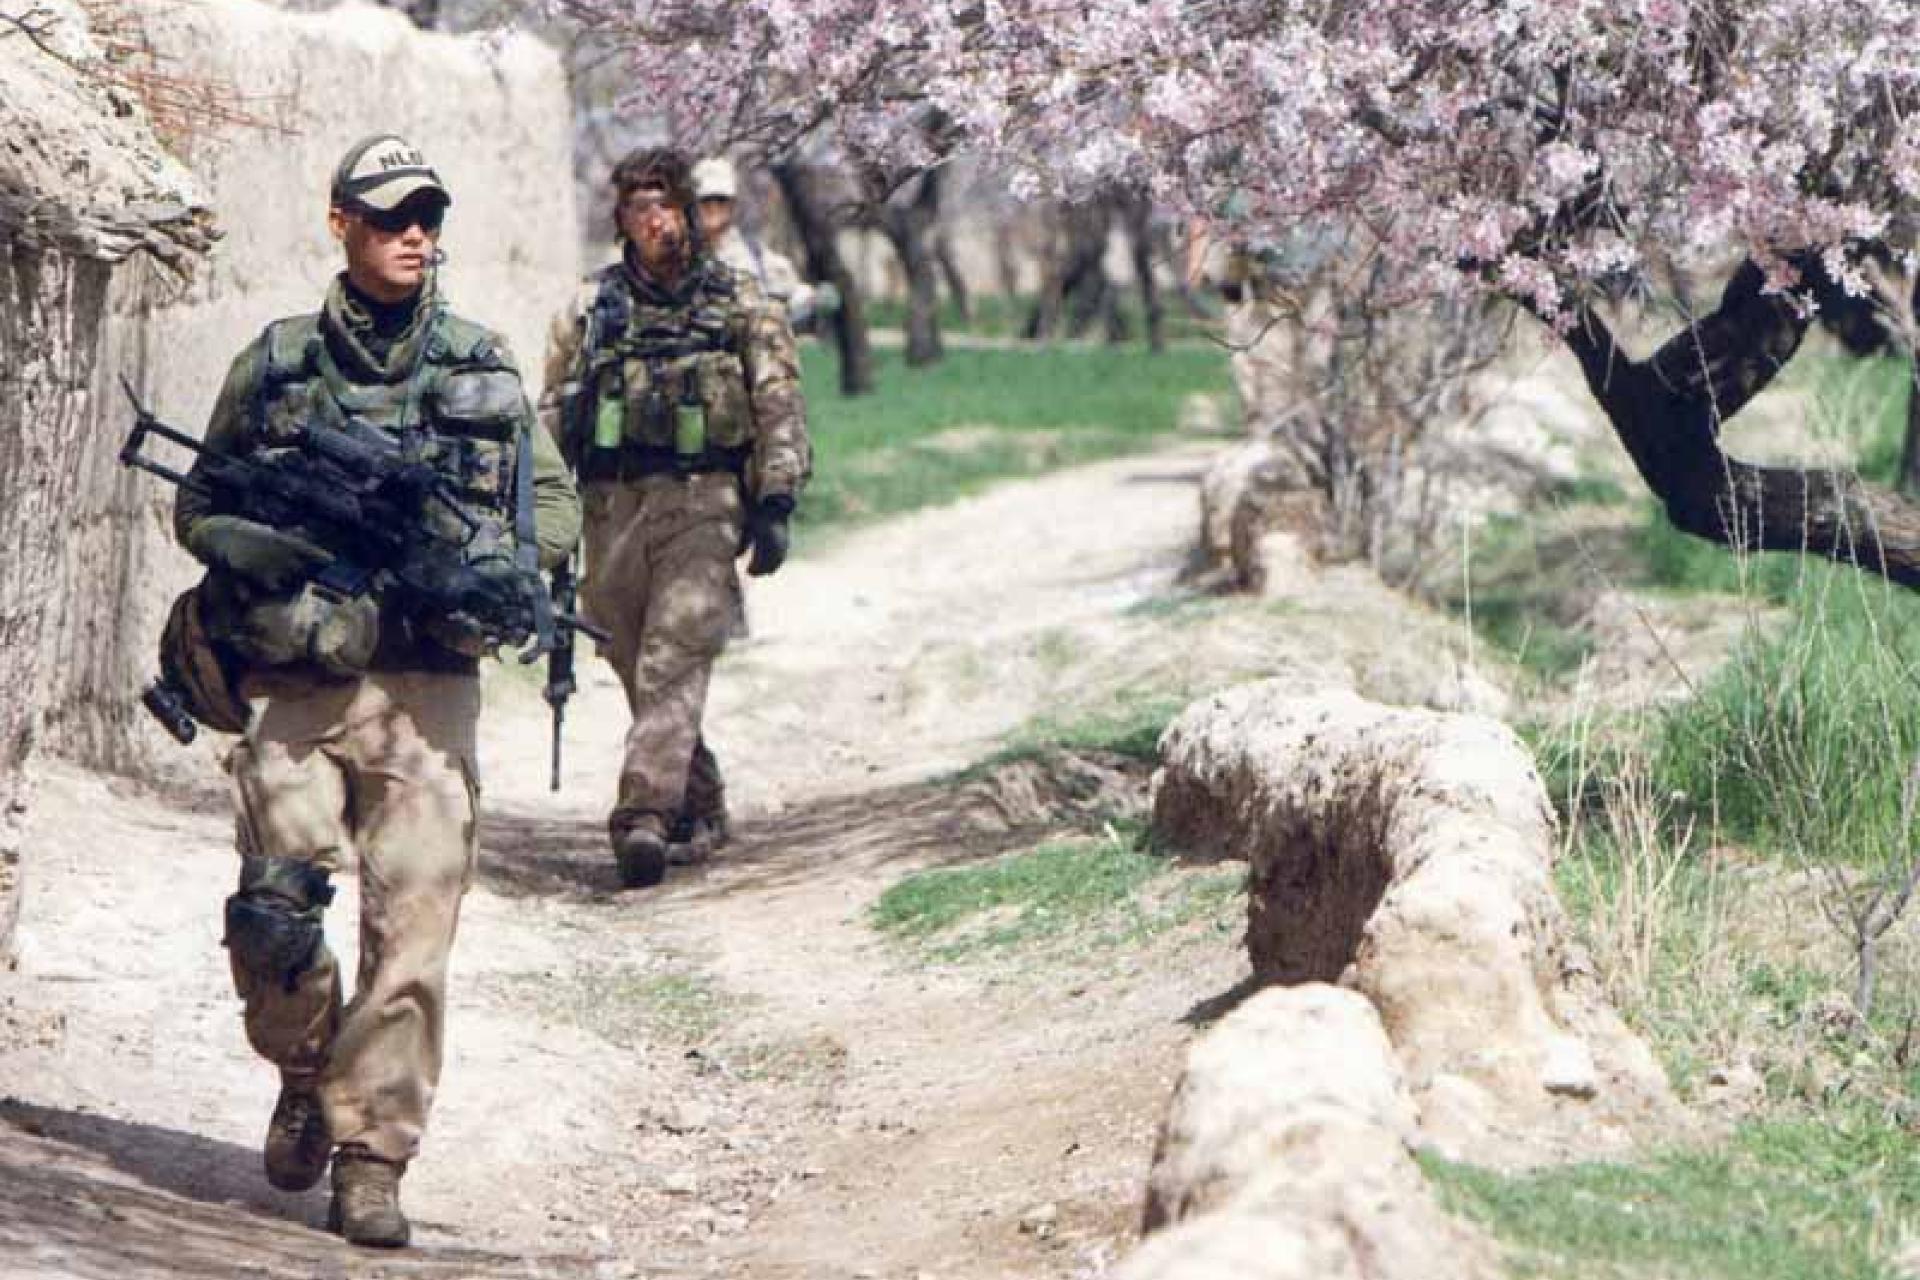 Twee soldaten op patrouille in Afghanistan met op de achtergrond een gebouw en boom in bloei